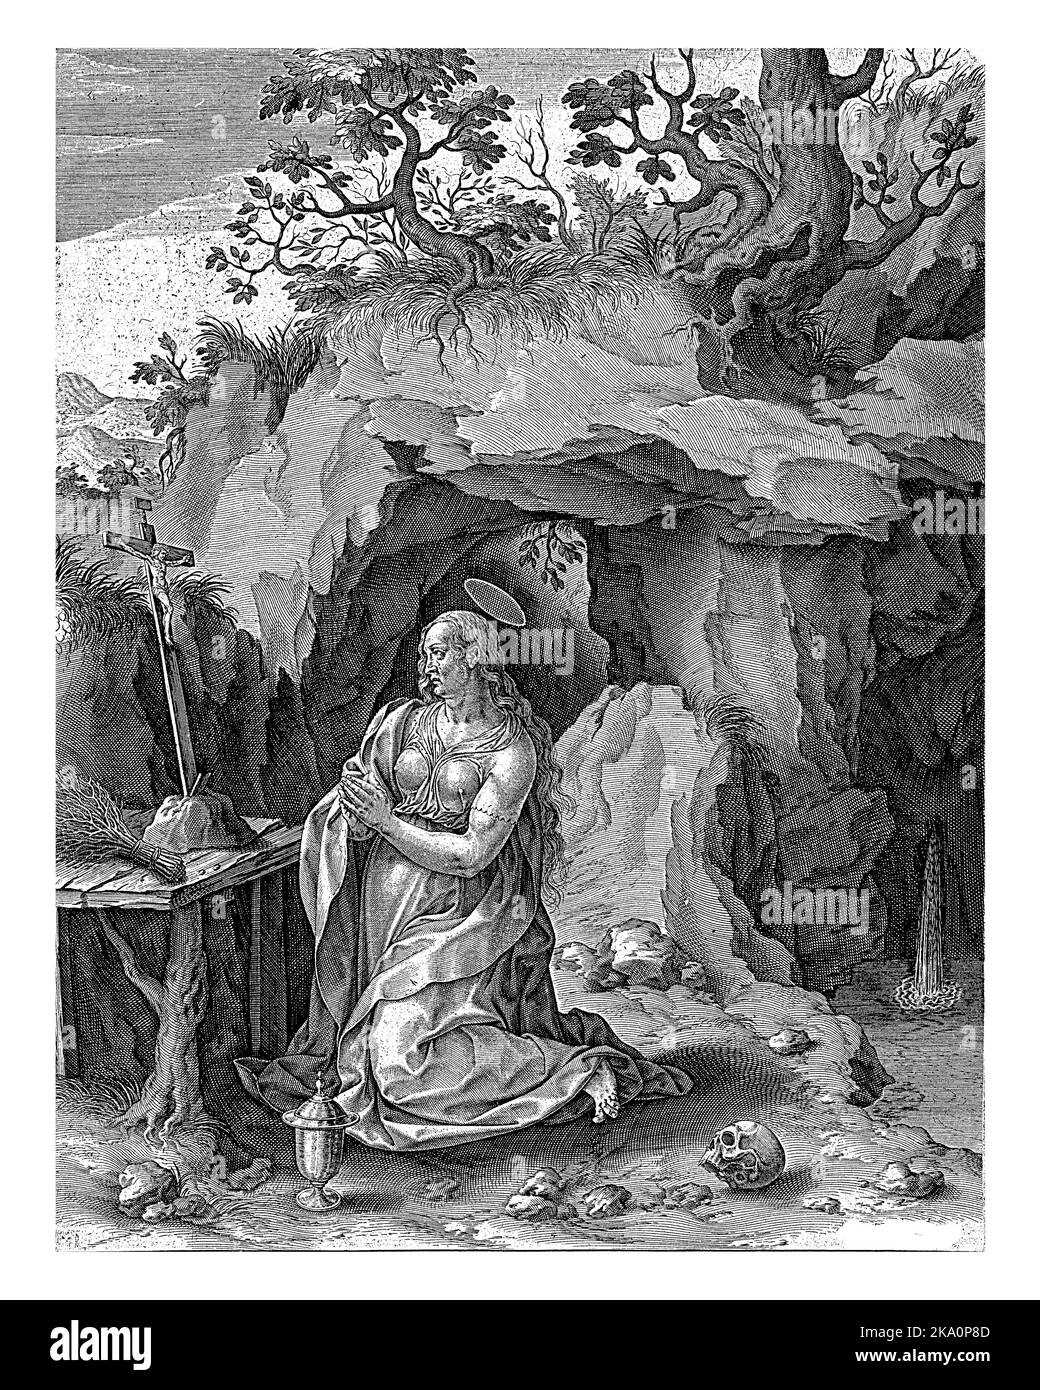 Die büßende Maria Magdalena betet vor einem Kruzifix in einer Höhle. Ein Wasserfall fließt in die Höhle. An ihren Knien das Glas mit Salbe. Ein Schädel liegt auf dem Stockfoto